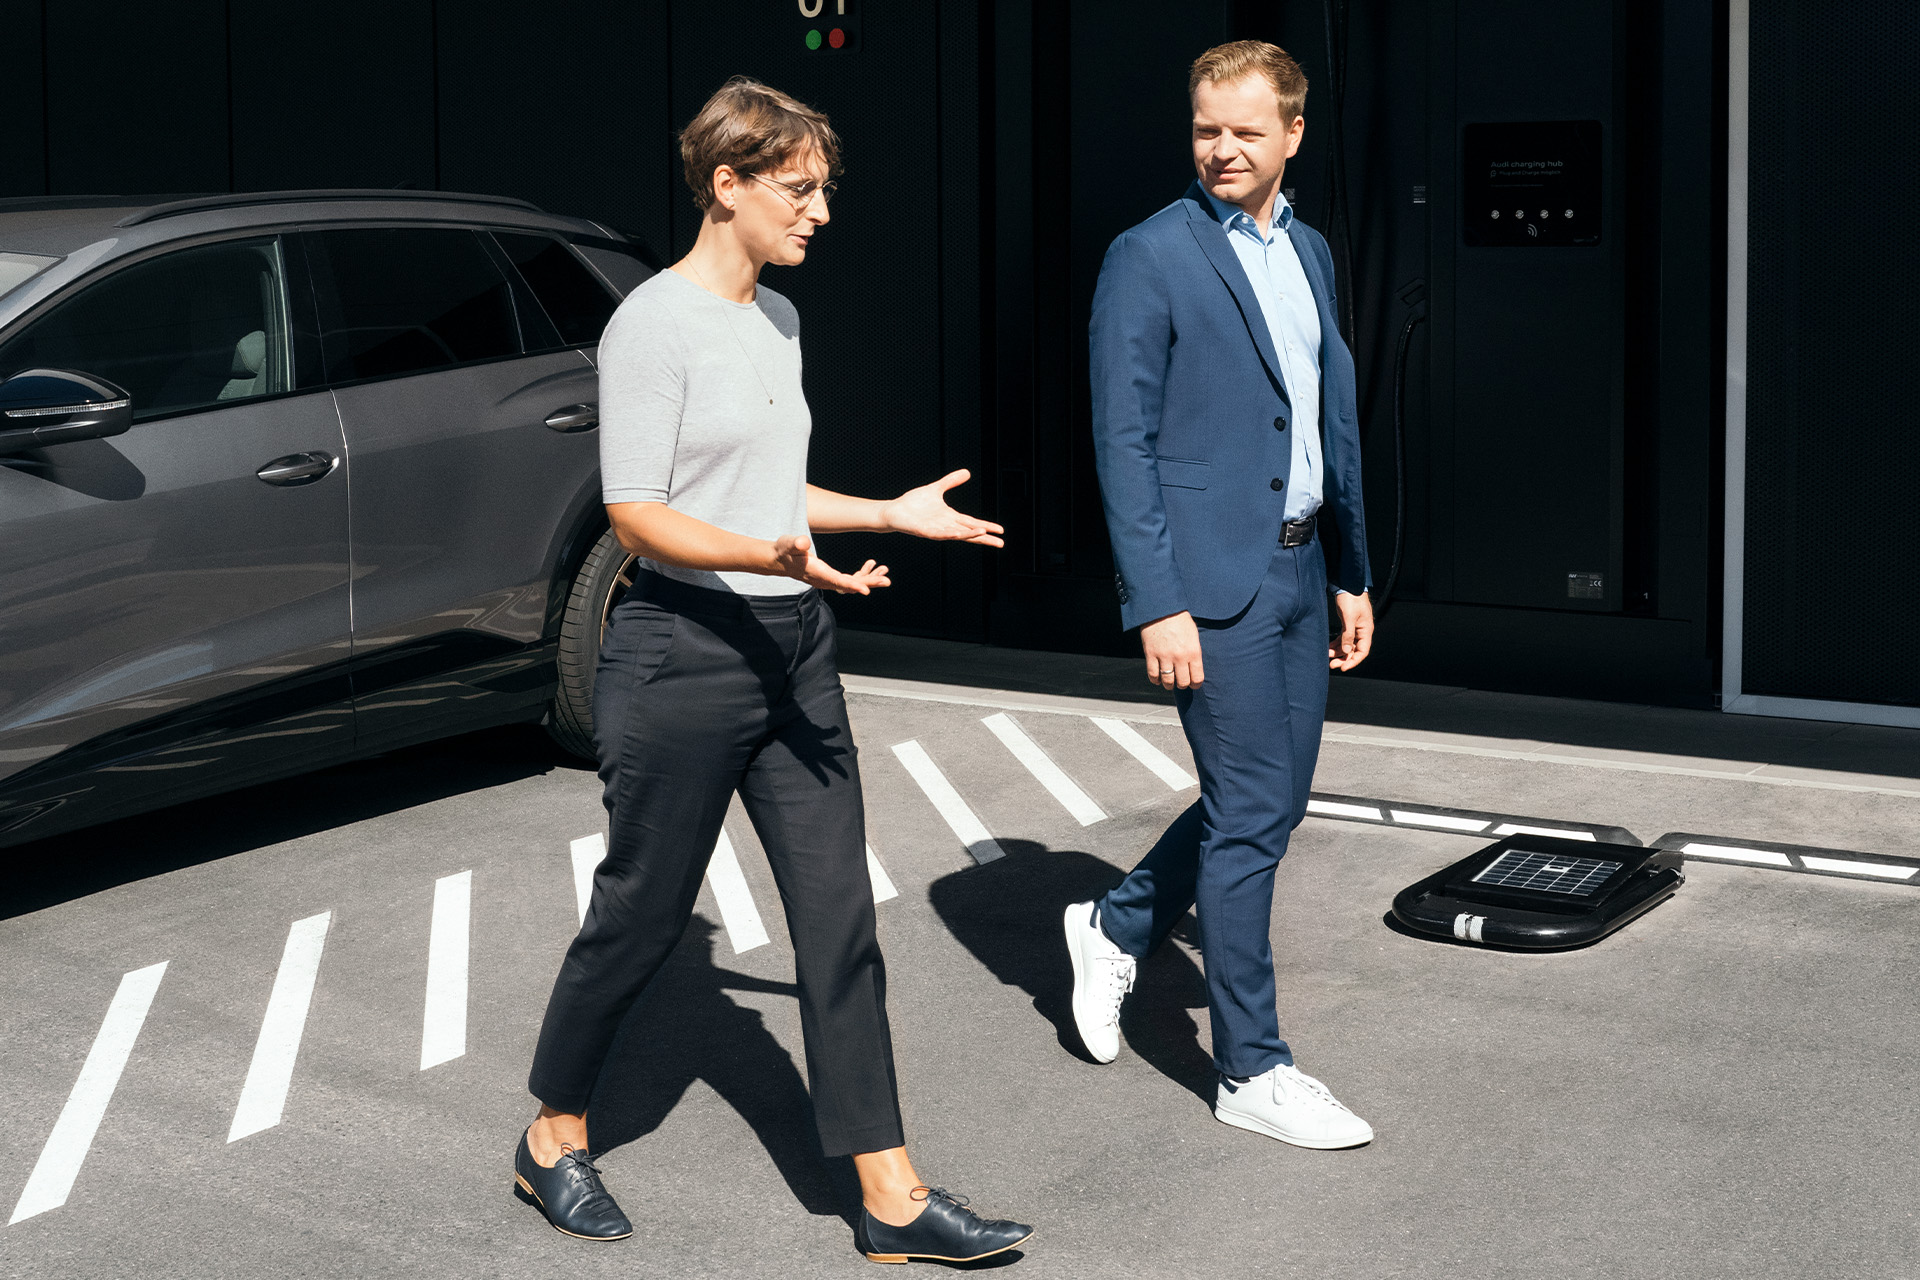  Los expertos en sustentabilidad, la Dra. Johanna Klewitz y Malte Vömel, caminan por el estacionamiento frente al centro de carga de Audi en Nuremberg.